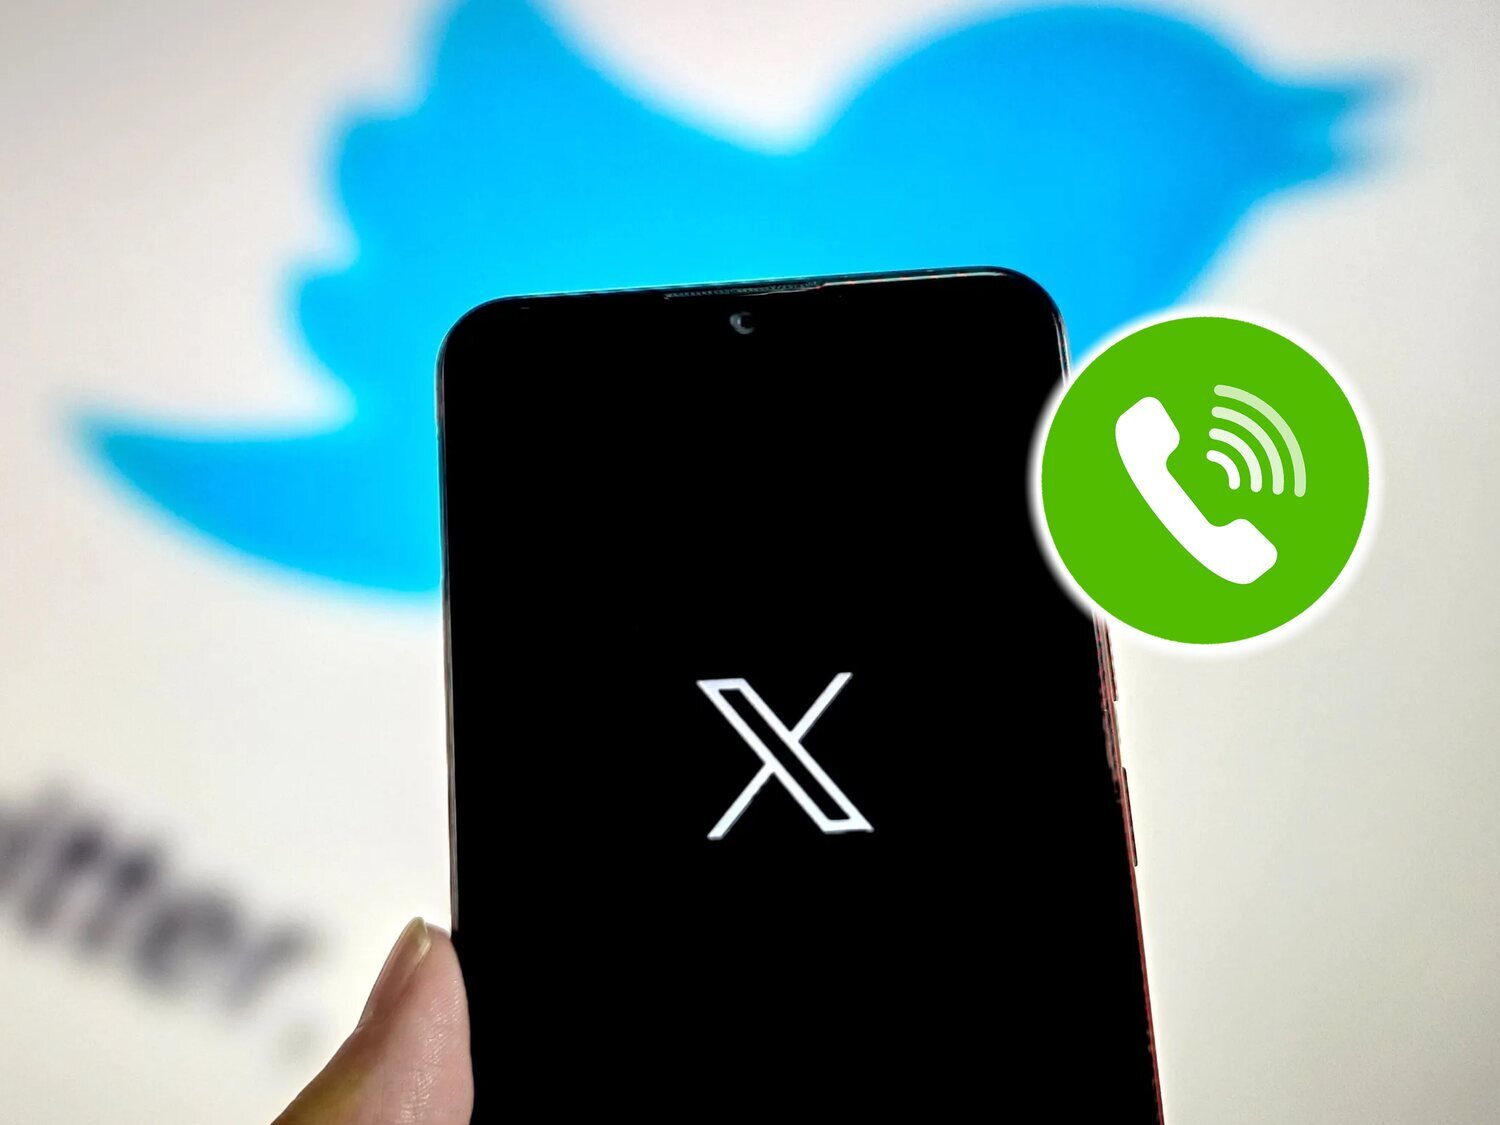 Las llamadas de X (Twitter) muestran tu IP por defecto: el ajuste que debes cambiar